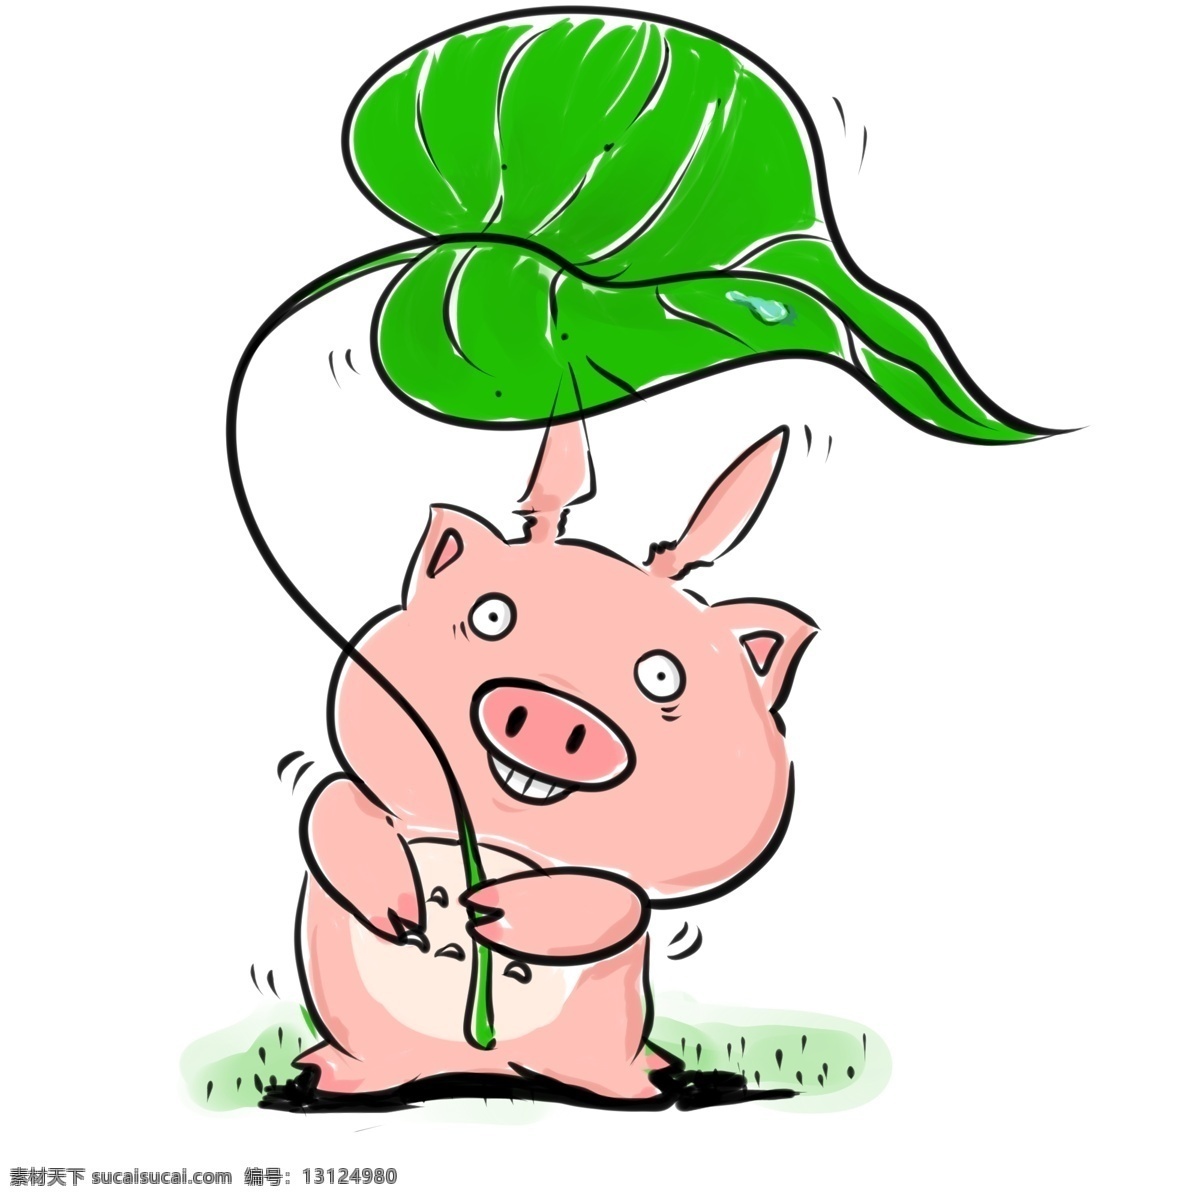 猪年 百 变小 猪 小猪 粉红 可爱 笑 逗趣 卡通 动物 手绘 龇牙 叶子 绿色 圆眼睛 小胖猪